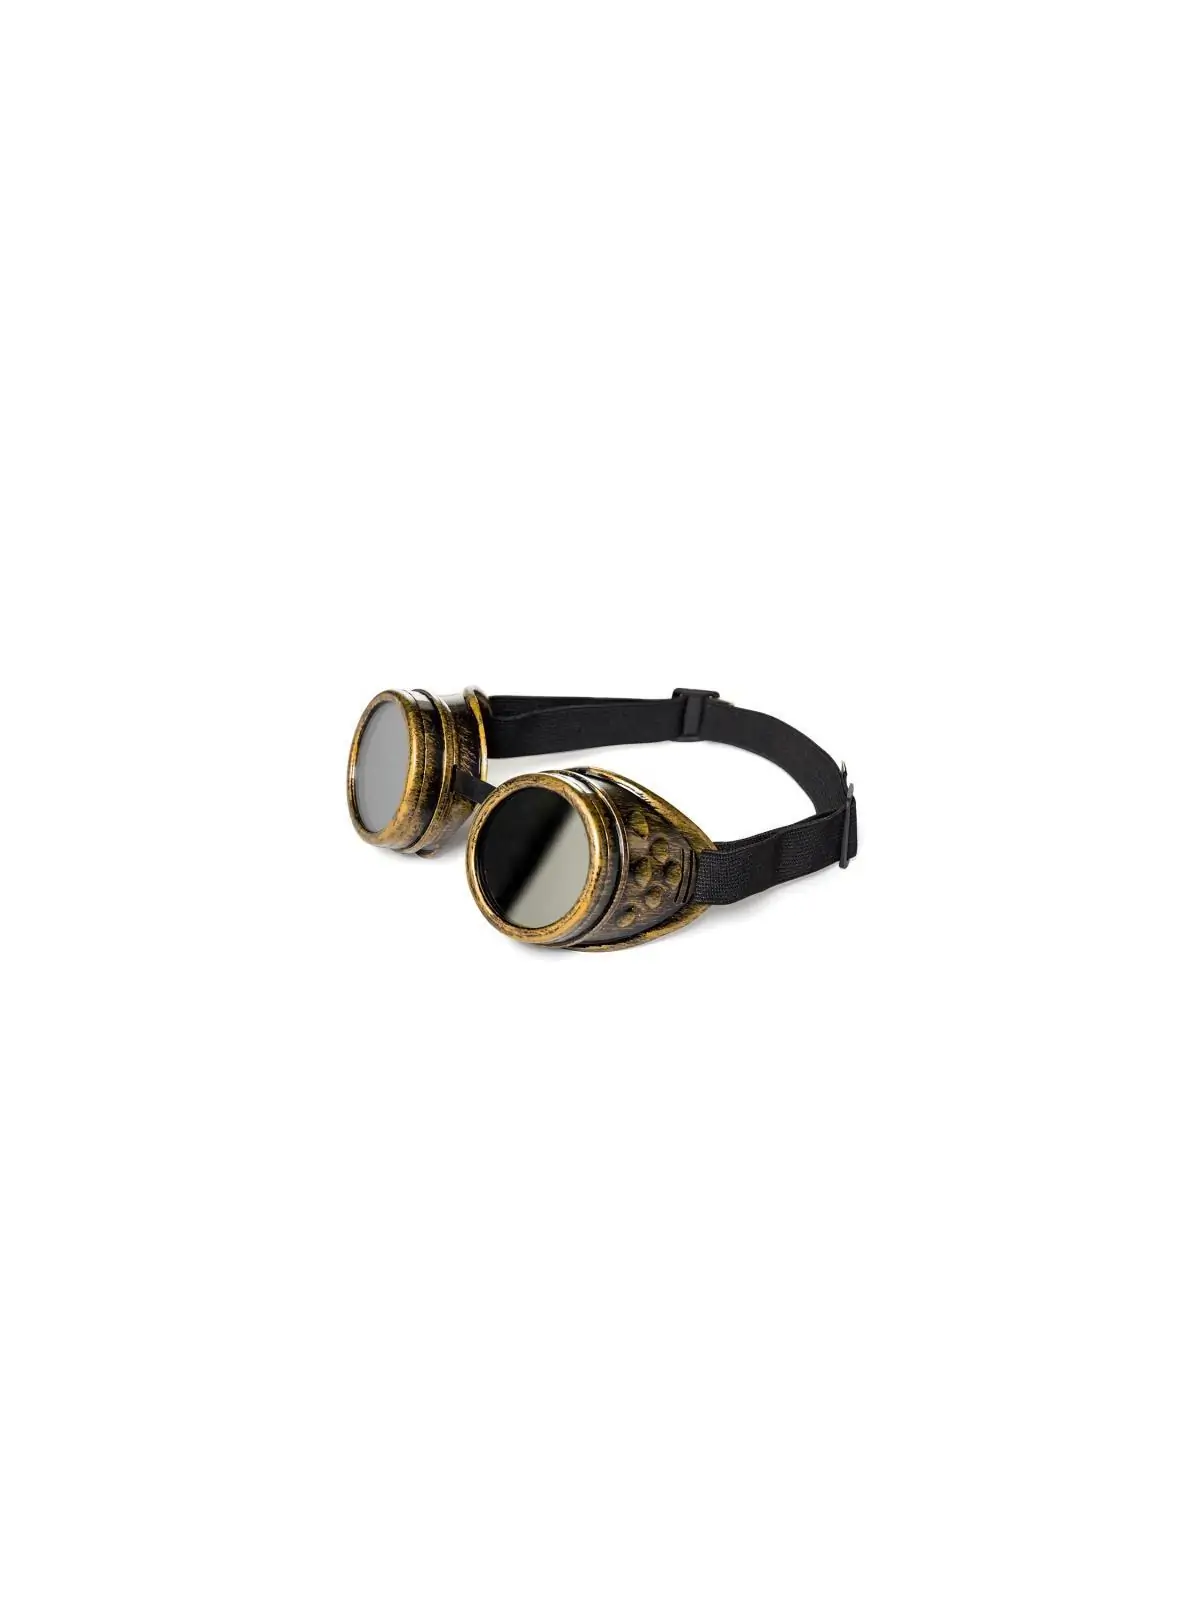 Steampunk Goggles gold/schwarz kaufen - Fesselliebe